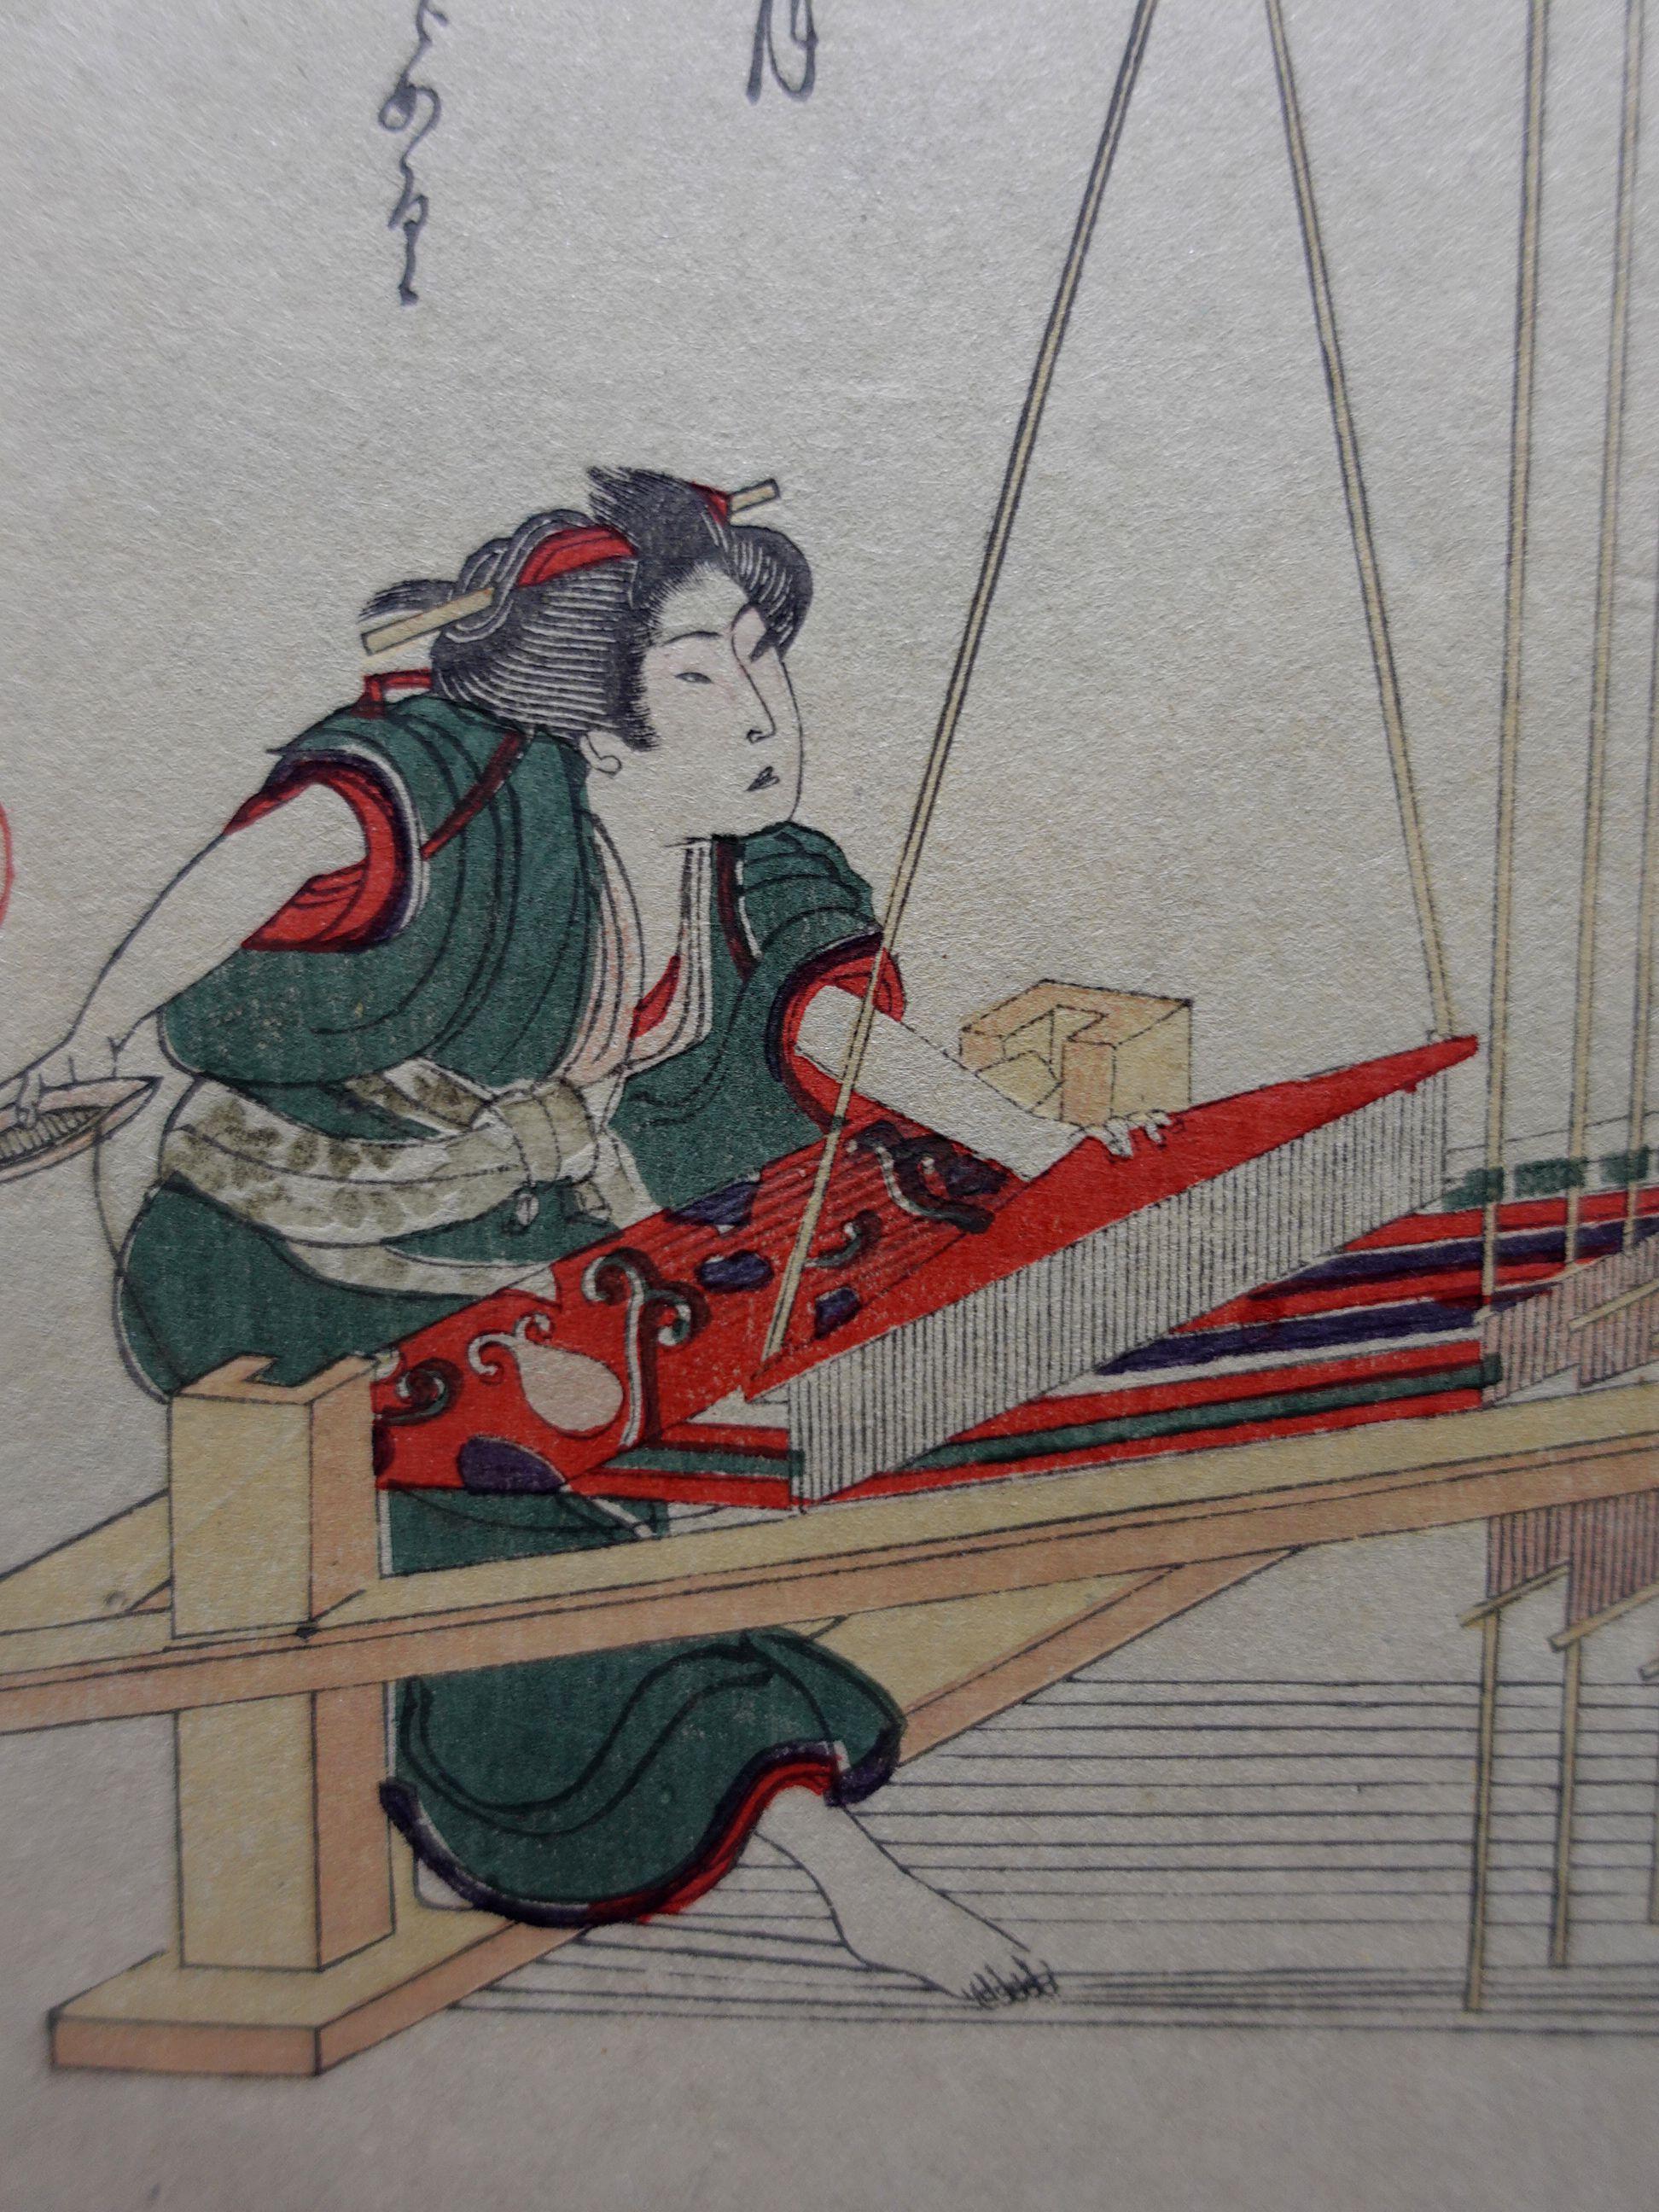 Japanischer Farbholzschnitt (1823) von Yanagawa Shigenobu 1880 Version 2, ungerahmt.

Über den Künstler

Der 1787 in Yanagawa geborene Shigenobu arbeitete als Puppenmacher, bevor er eine erfolgreiche Karriere als Ukiyo-e-Grafiker und Buchillustrator